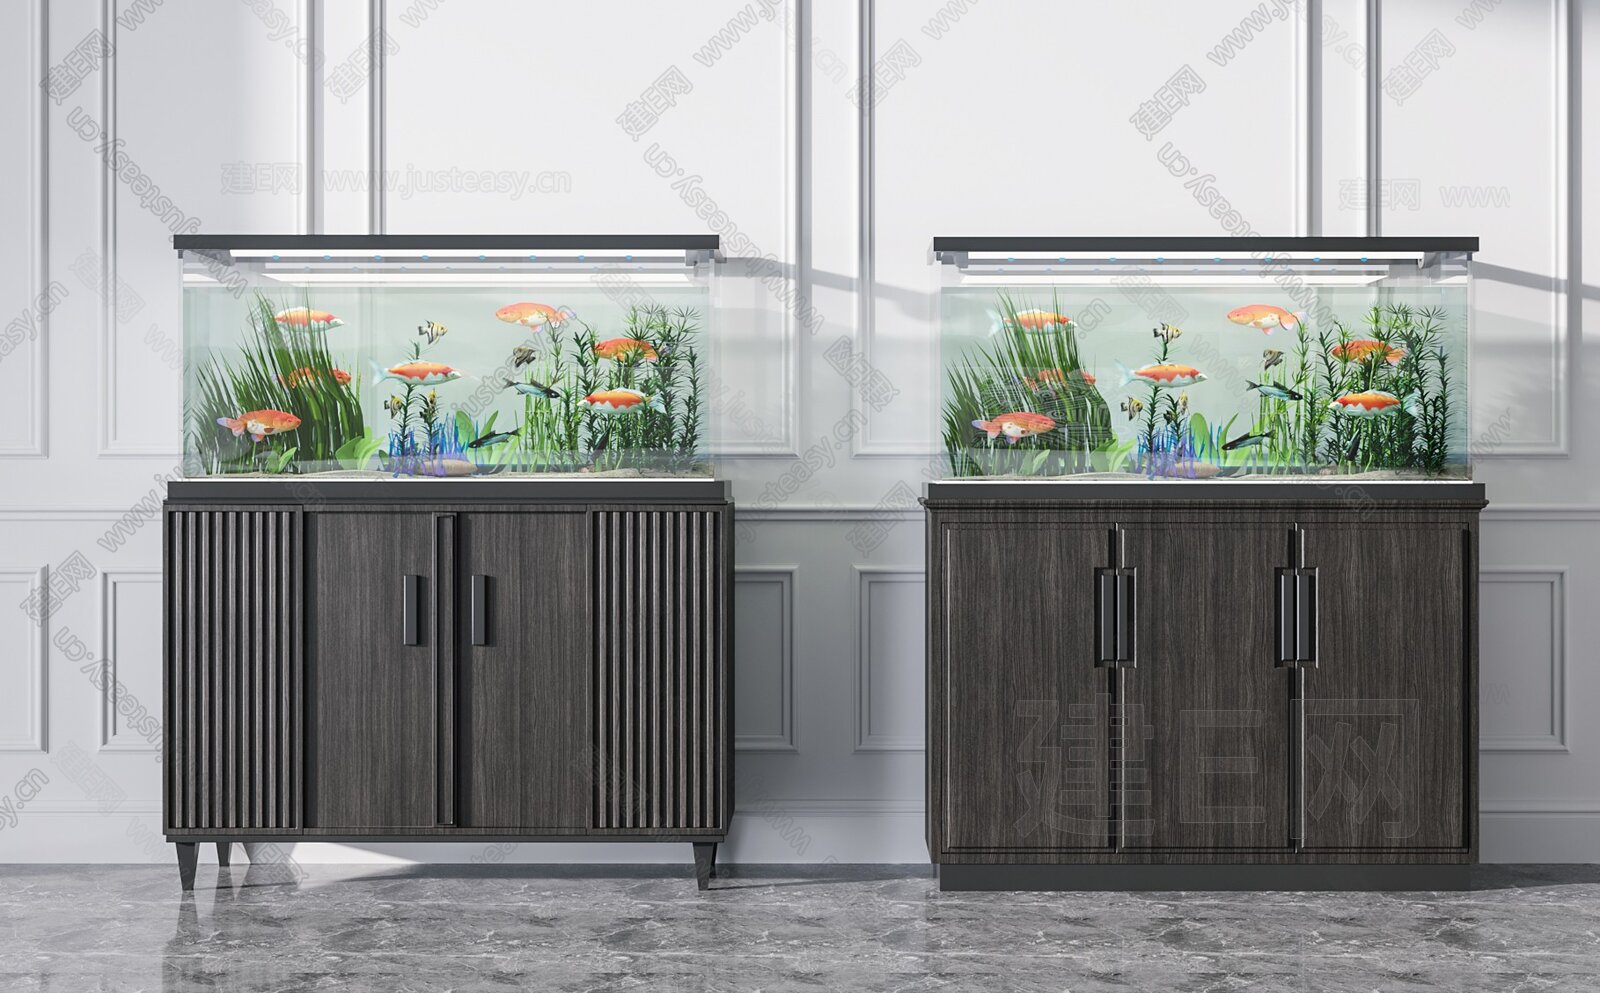 简约风室内设计餐厅鱼缸效果图素材图片下载-素材编号12432239-素材天下图库